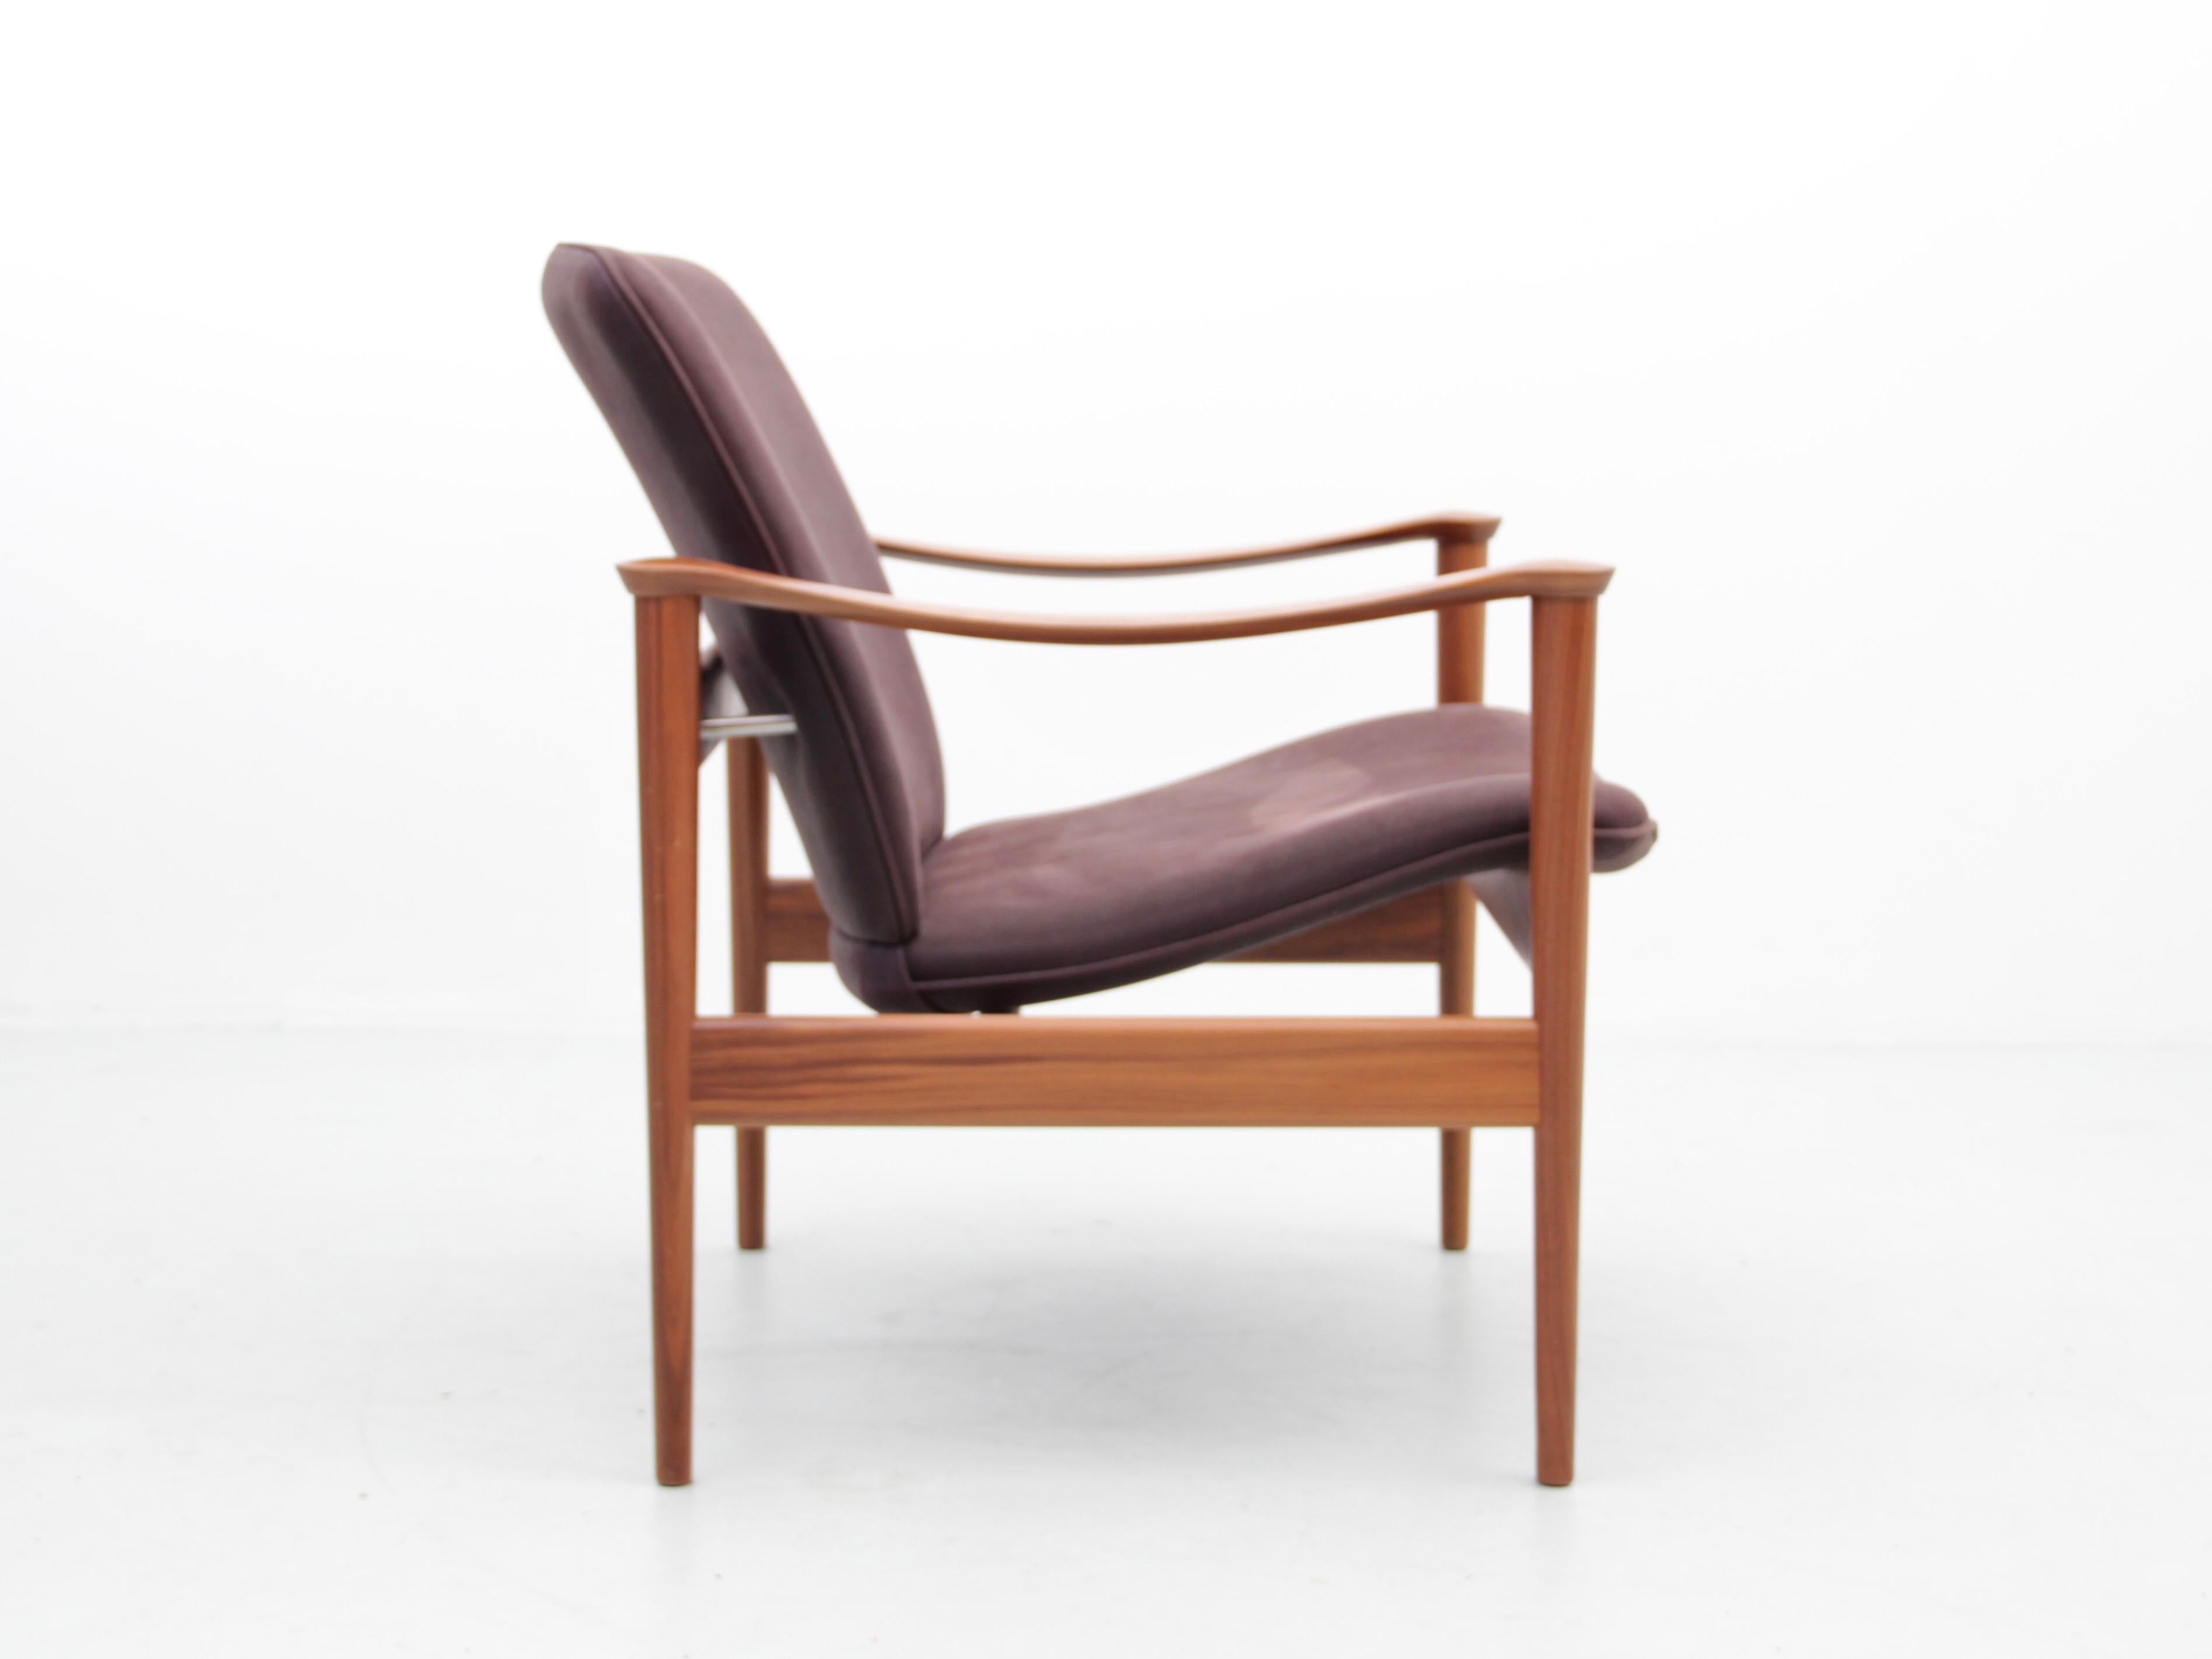 Chaise lounge 711 de Fredrik Kayser, de style moderne du milieu du siècle. Nouvelle édition. Conçu en 1960 par Fredrik A. Kayser, il est aujourd'hui réédité par le fabricant norvégien Hjelle.
Le modèle sur les photos est en noyer et cuir Dune.